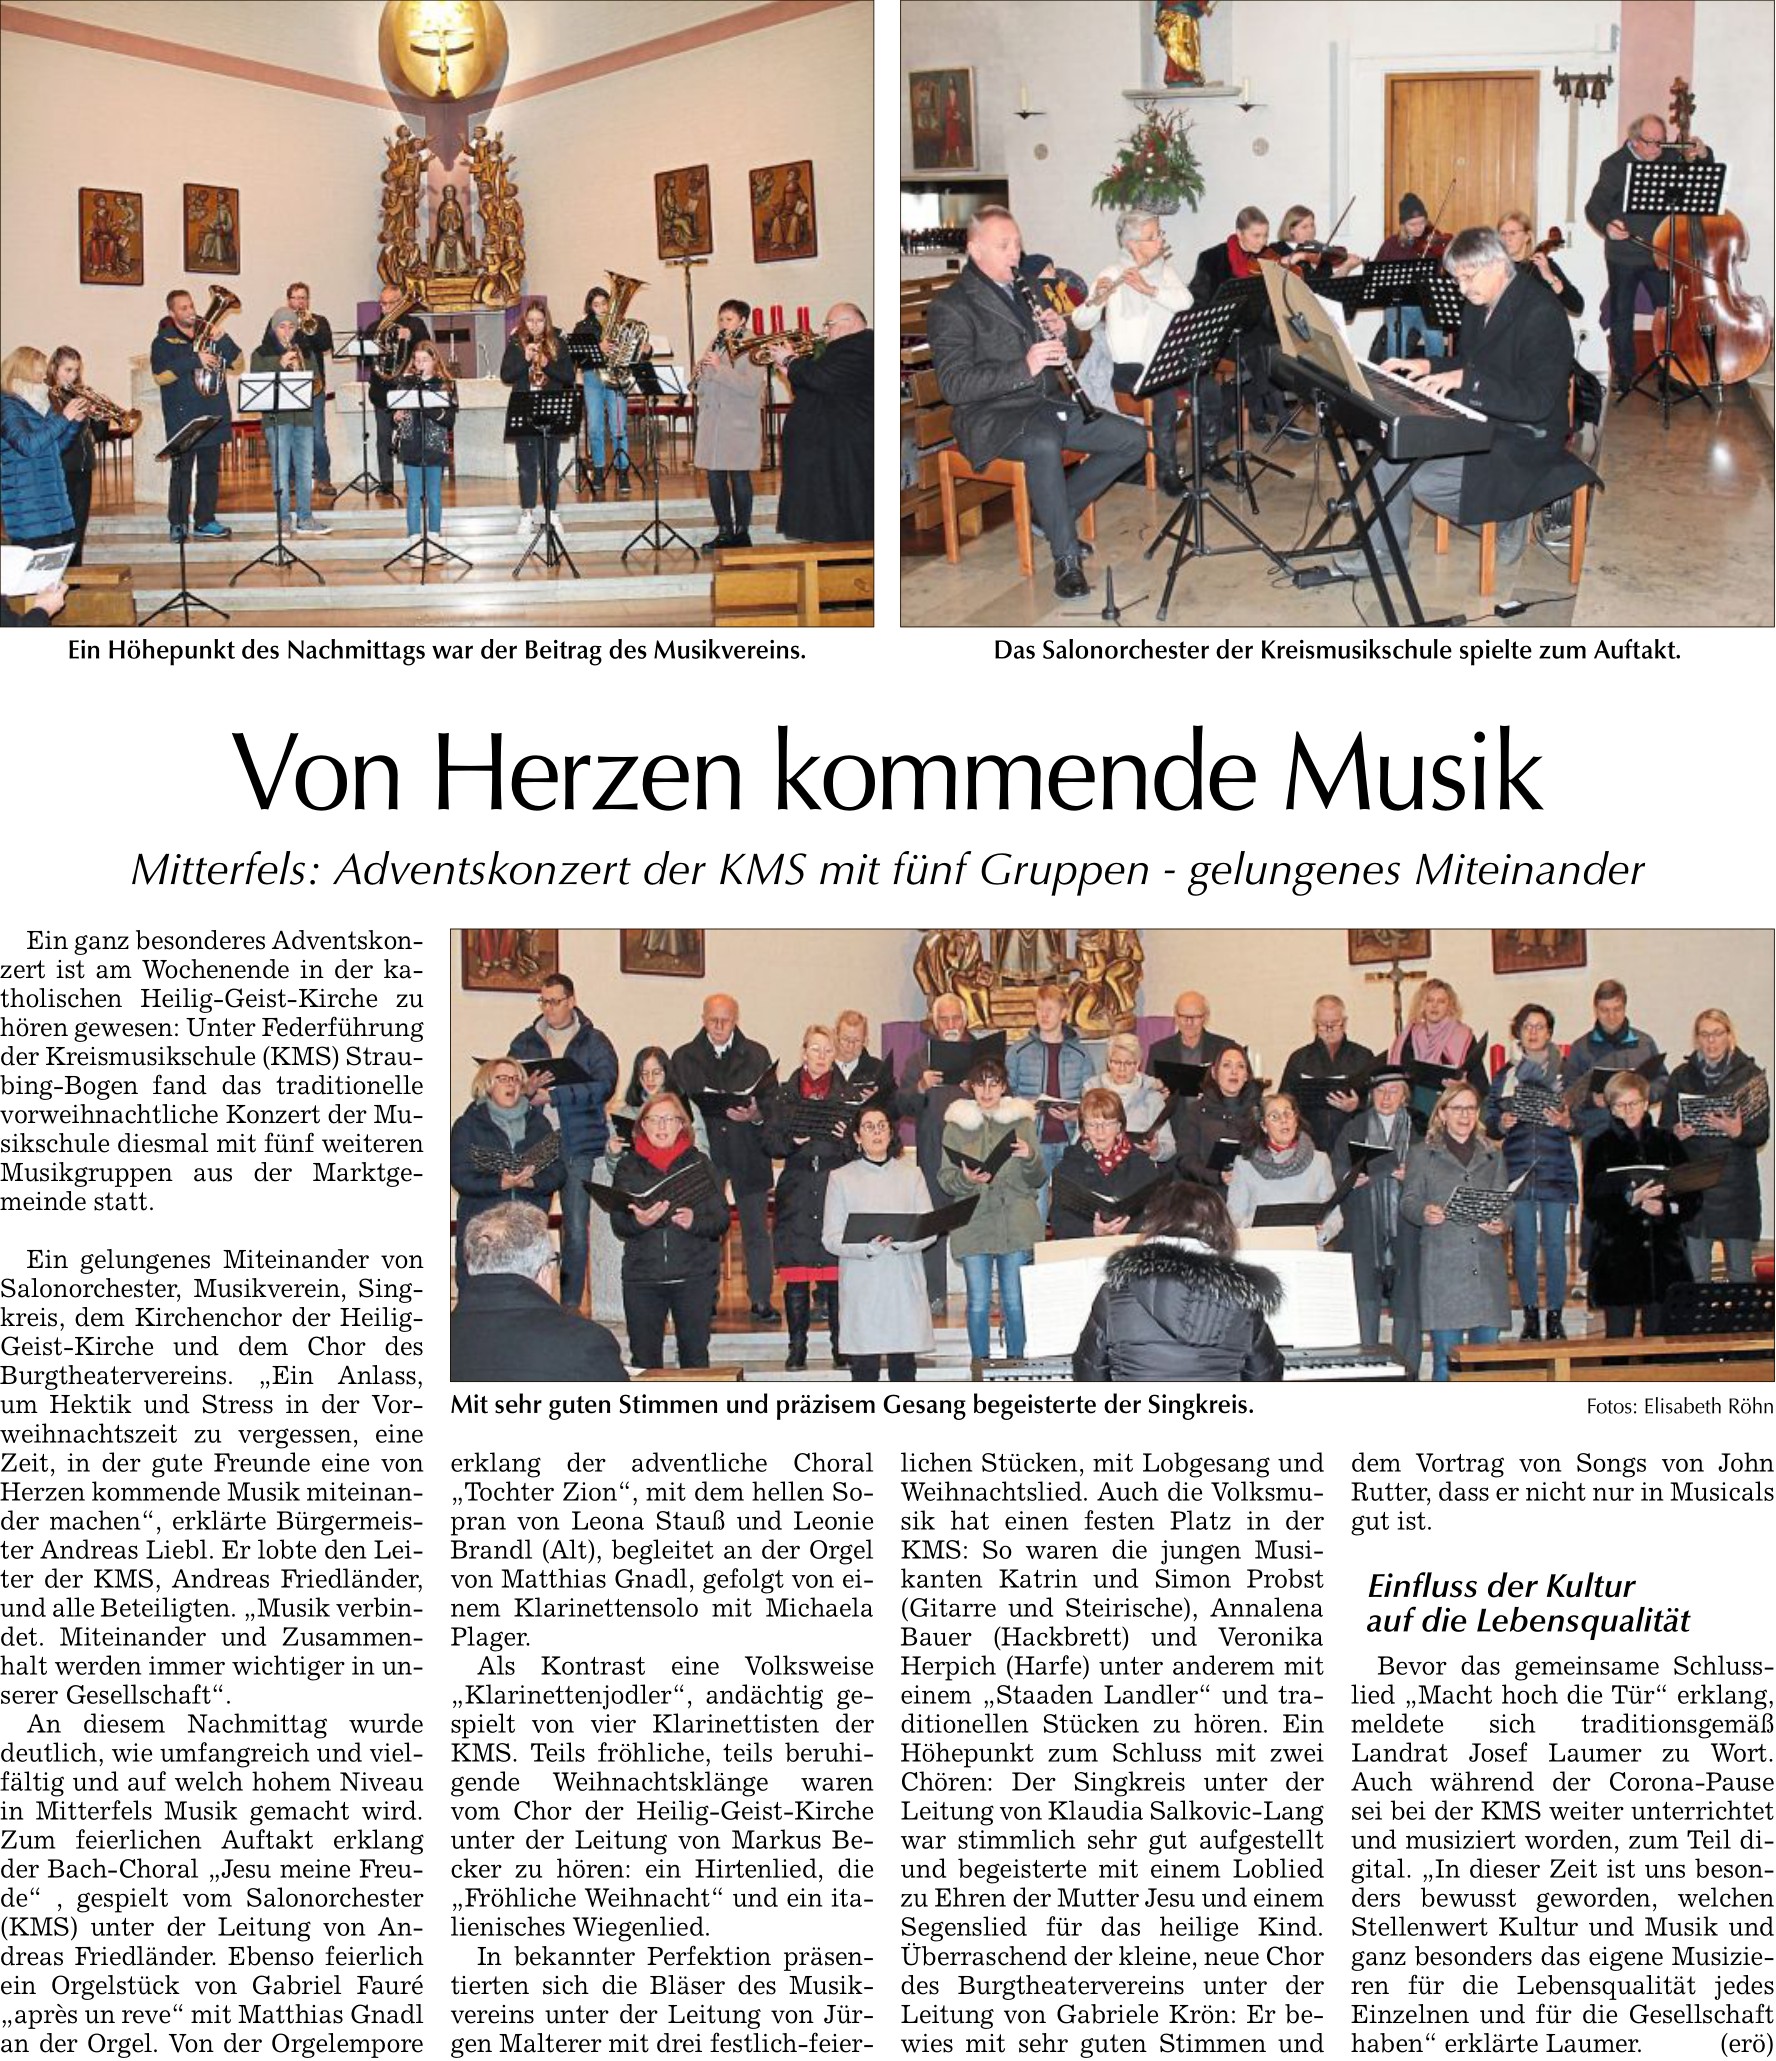 Adventskonzert 2022 der Kreismusikschule Straubing-Bogen